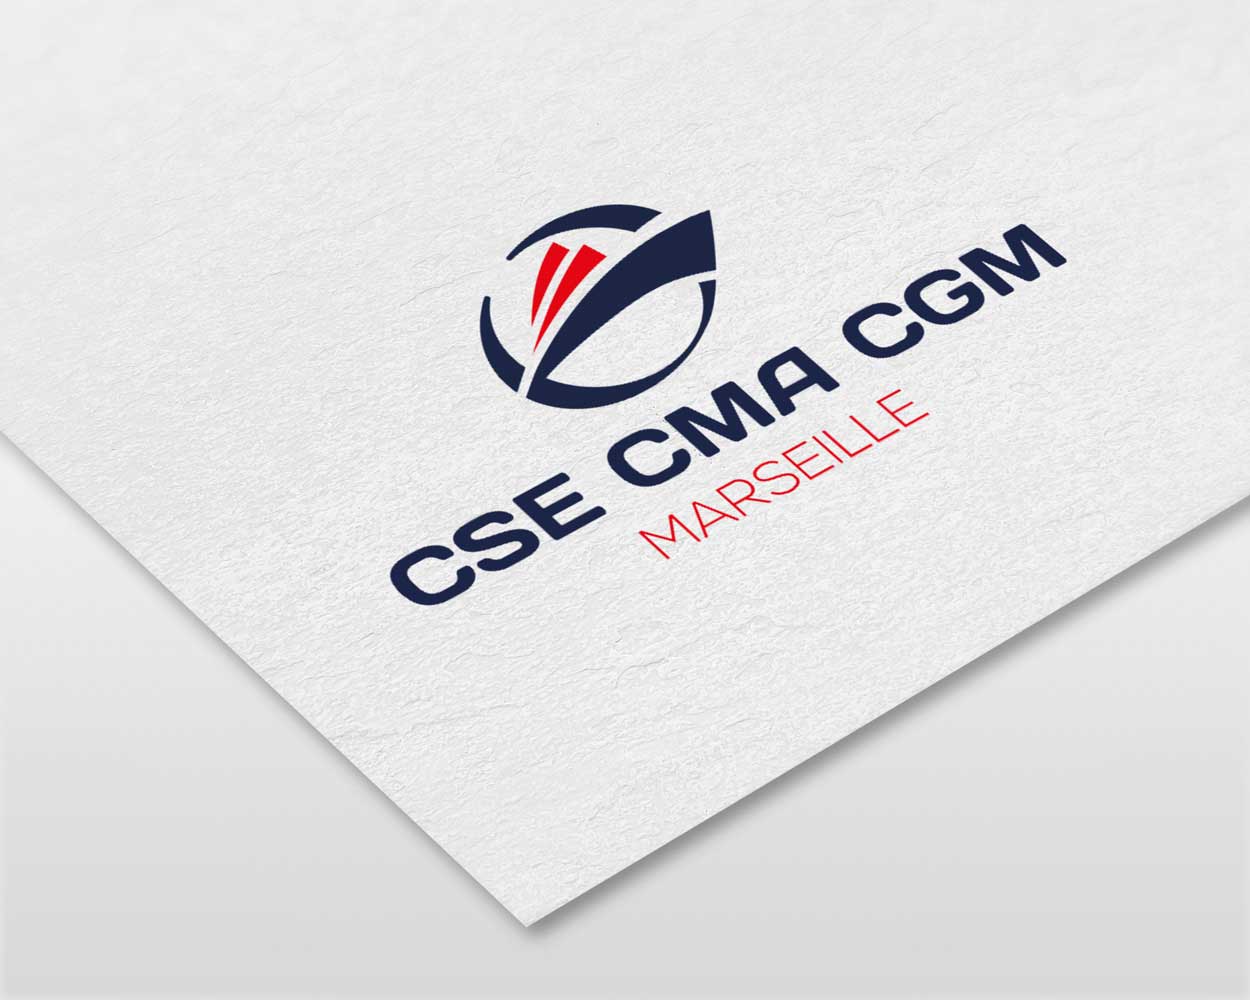 Création graphique logo par Click-création (studio de graphistes Guerlédan Bretagne 22) CSE CMA CGM